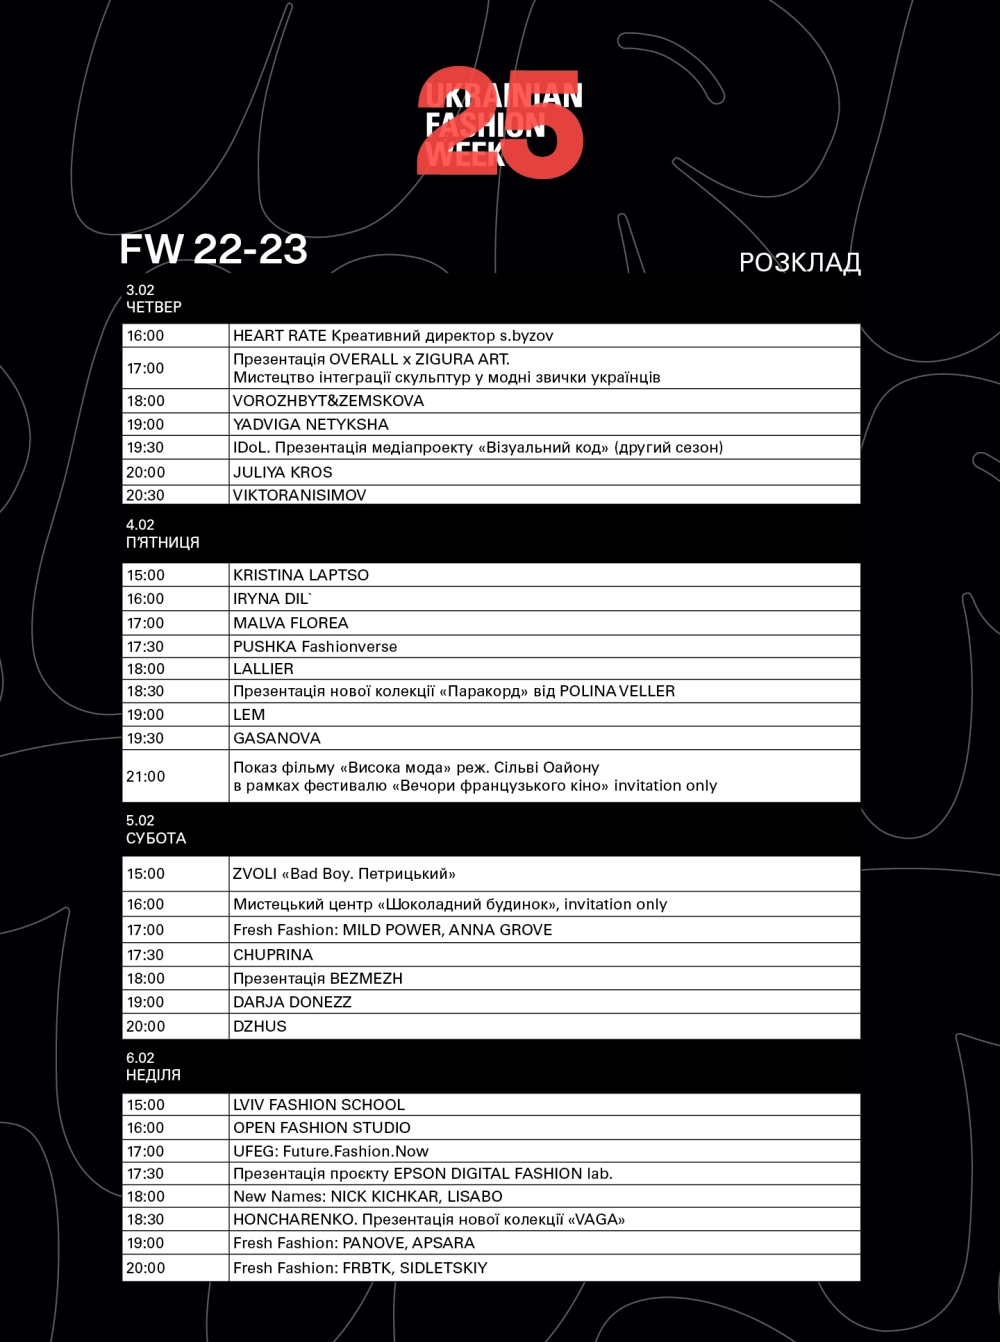 Организаторы Ukrainian Fashion Week FW22-23 объявили программу нового сезона: расписание показов